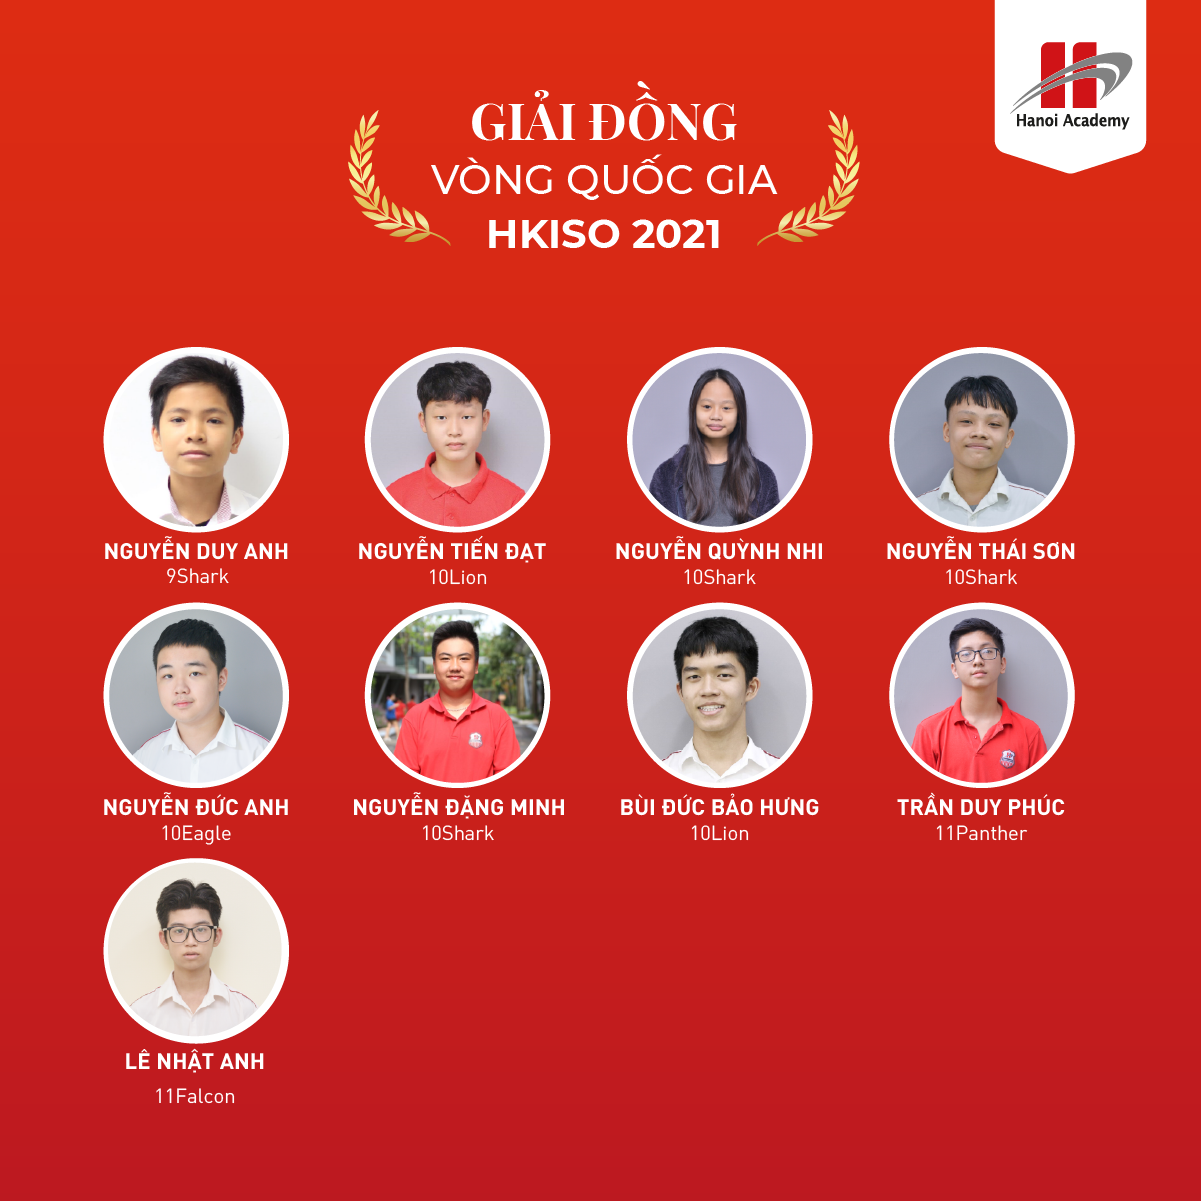 Đội tuyển Hanoi Academy xuất sắc giành những giải thưởng quan trọng trong cuộc thi HKISO 2020 &#8211; 2021